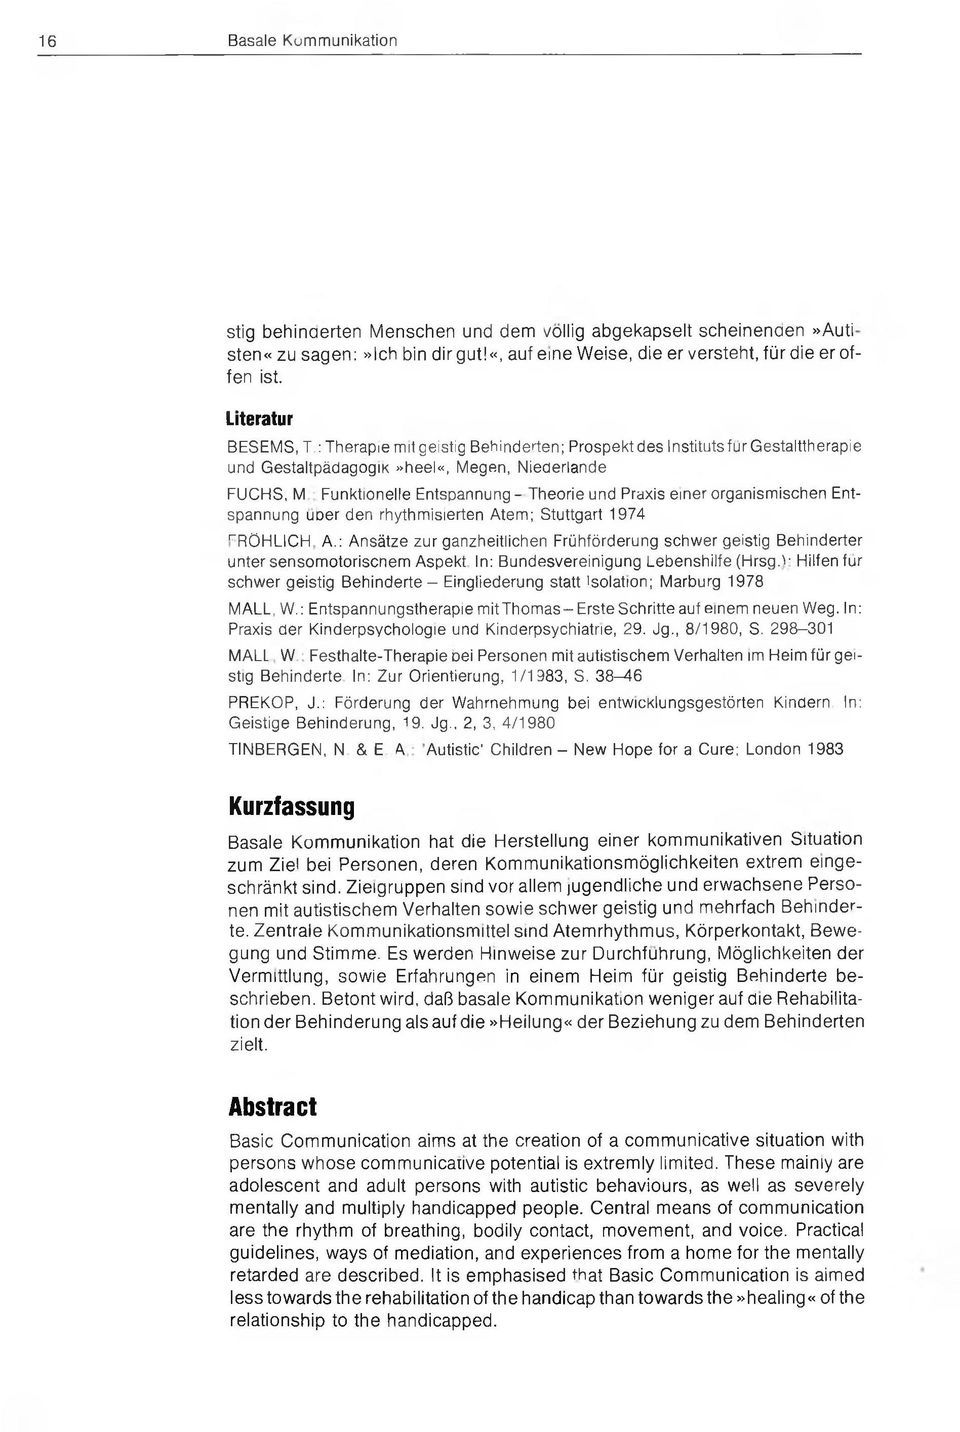 : Funktionelle Entspannung - Theorie und Praxis einer organism ischen Entspannung über den rhythm isierten Atem ; Stuttgart 1974 FRÖ HLICH, A.